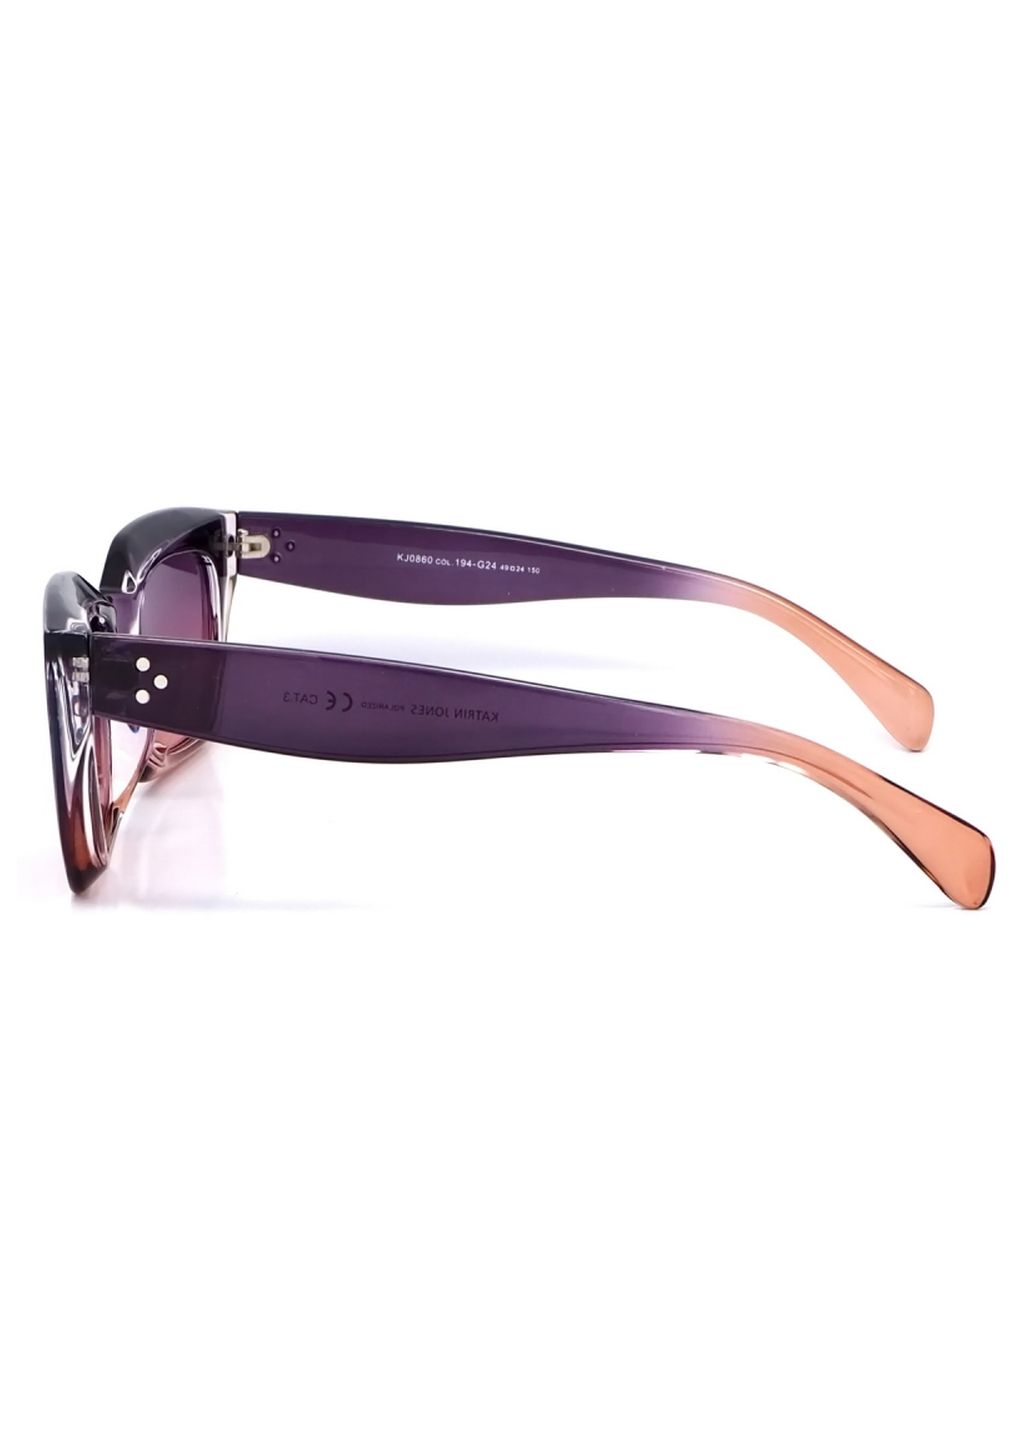 Купить Женские солнцезащитные очки Katrin Jones с поляризацией KJ0860 180047 - Фиолетовый в интернет-магазине